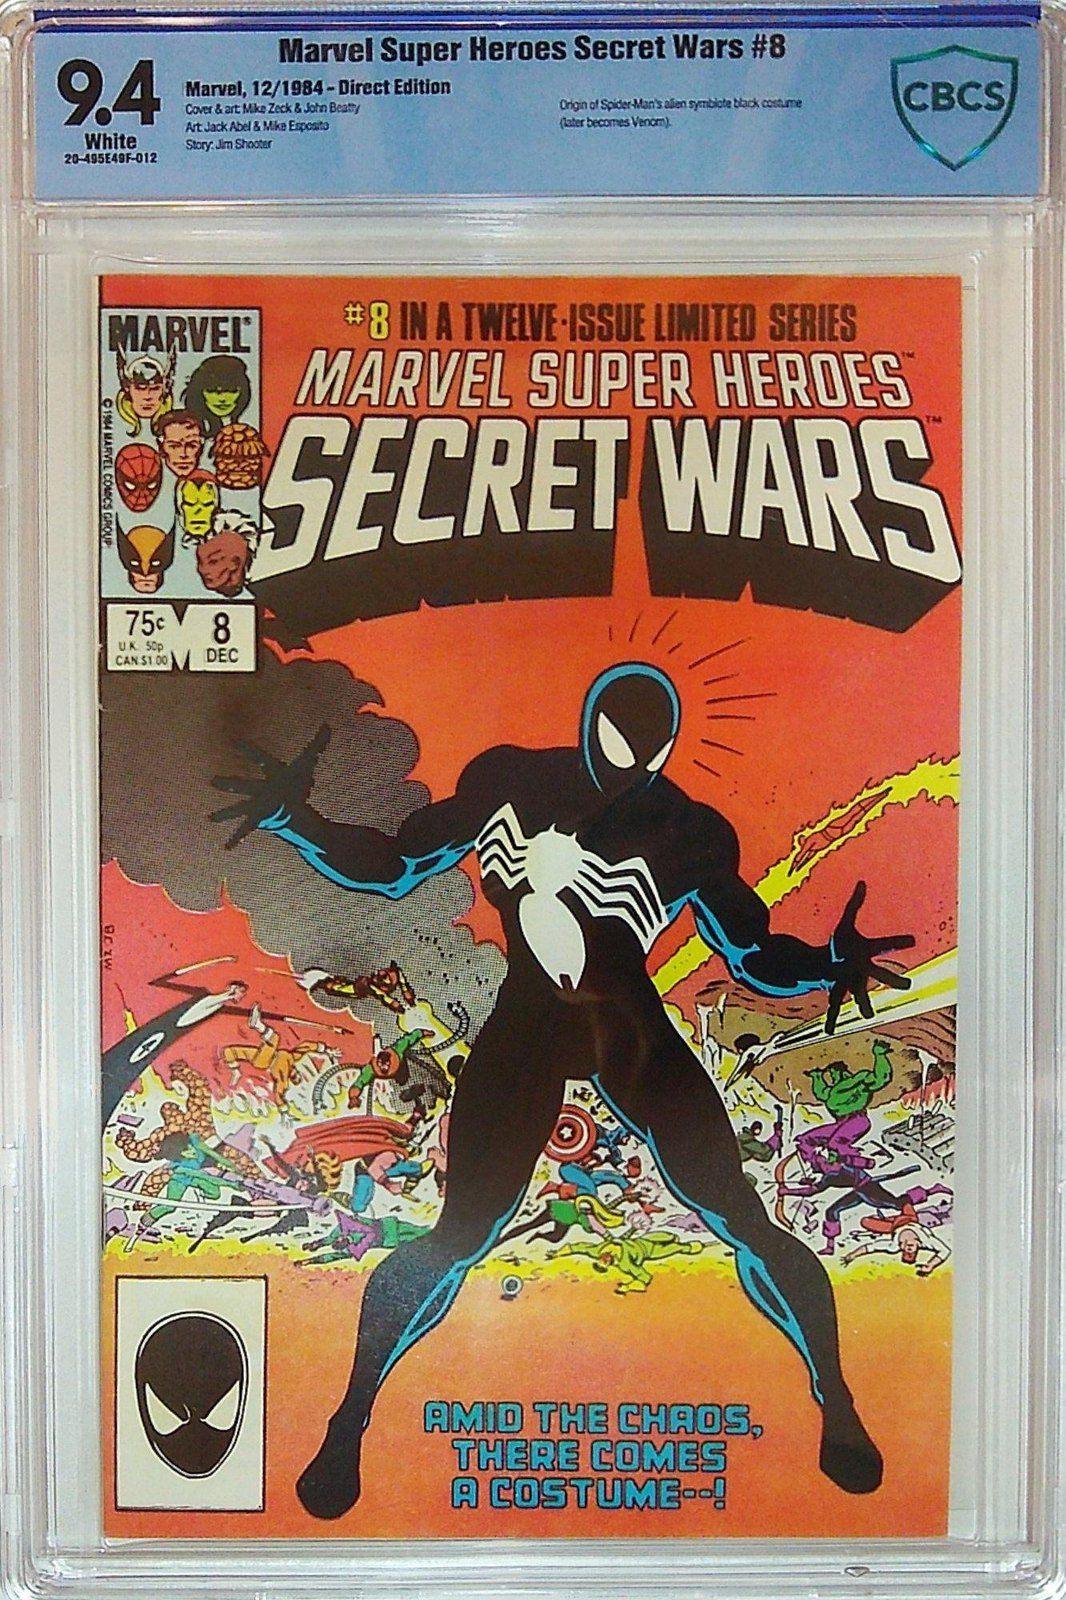 MARVEL SUPER-HEROES SECRET WARS #8 CBCS 9.4 - PCKComics.com